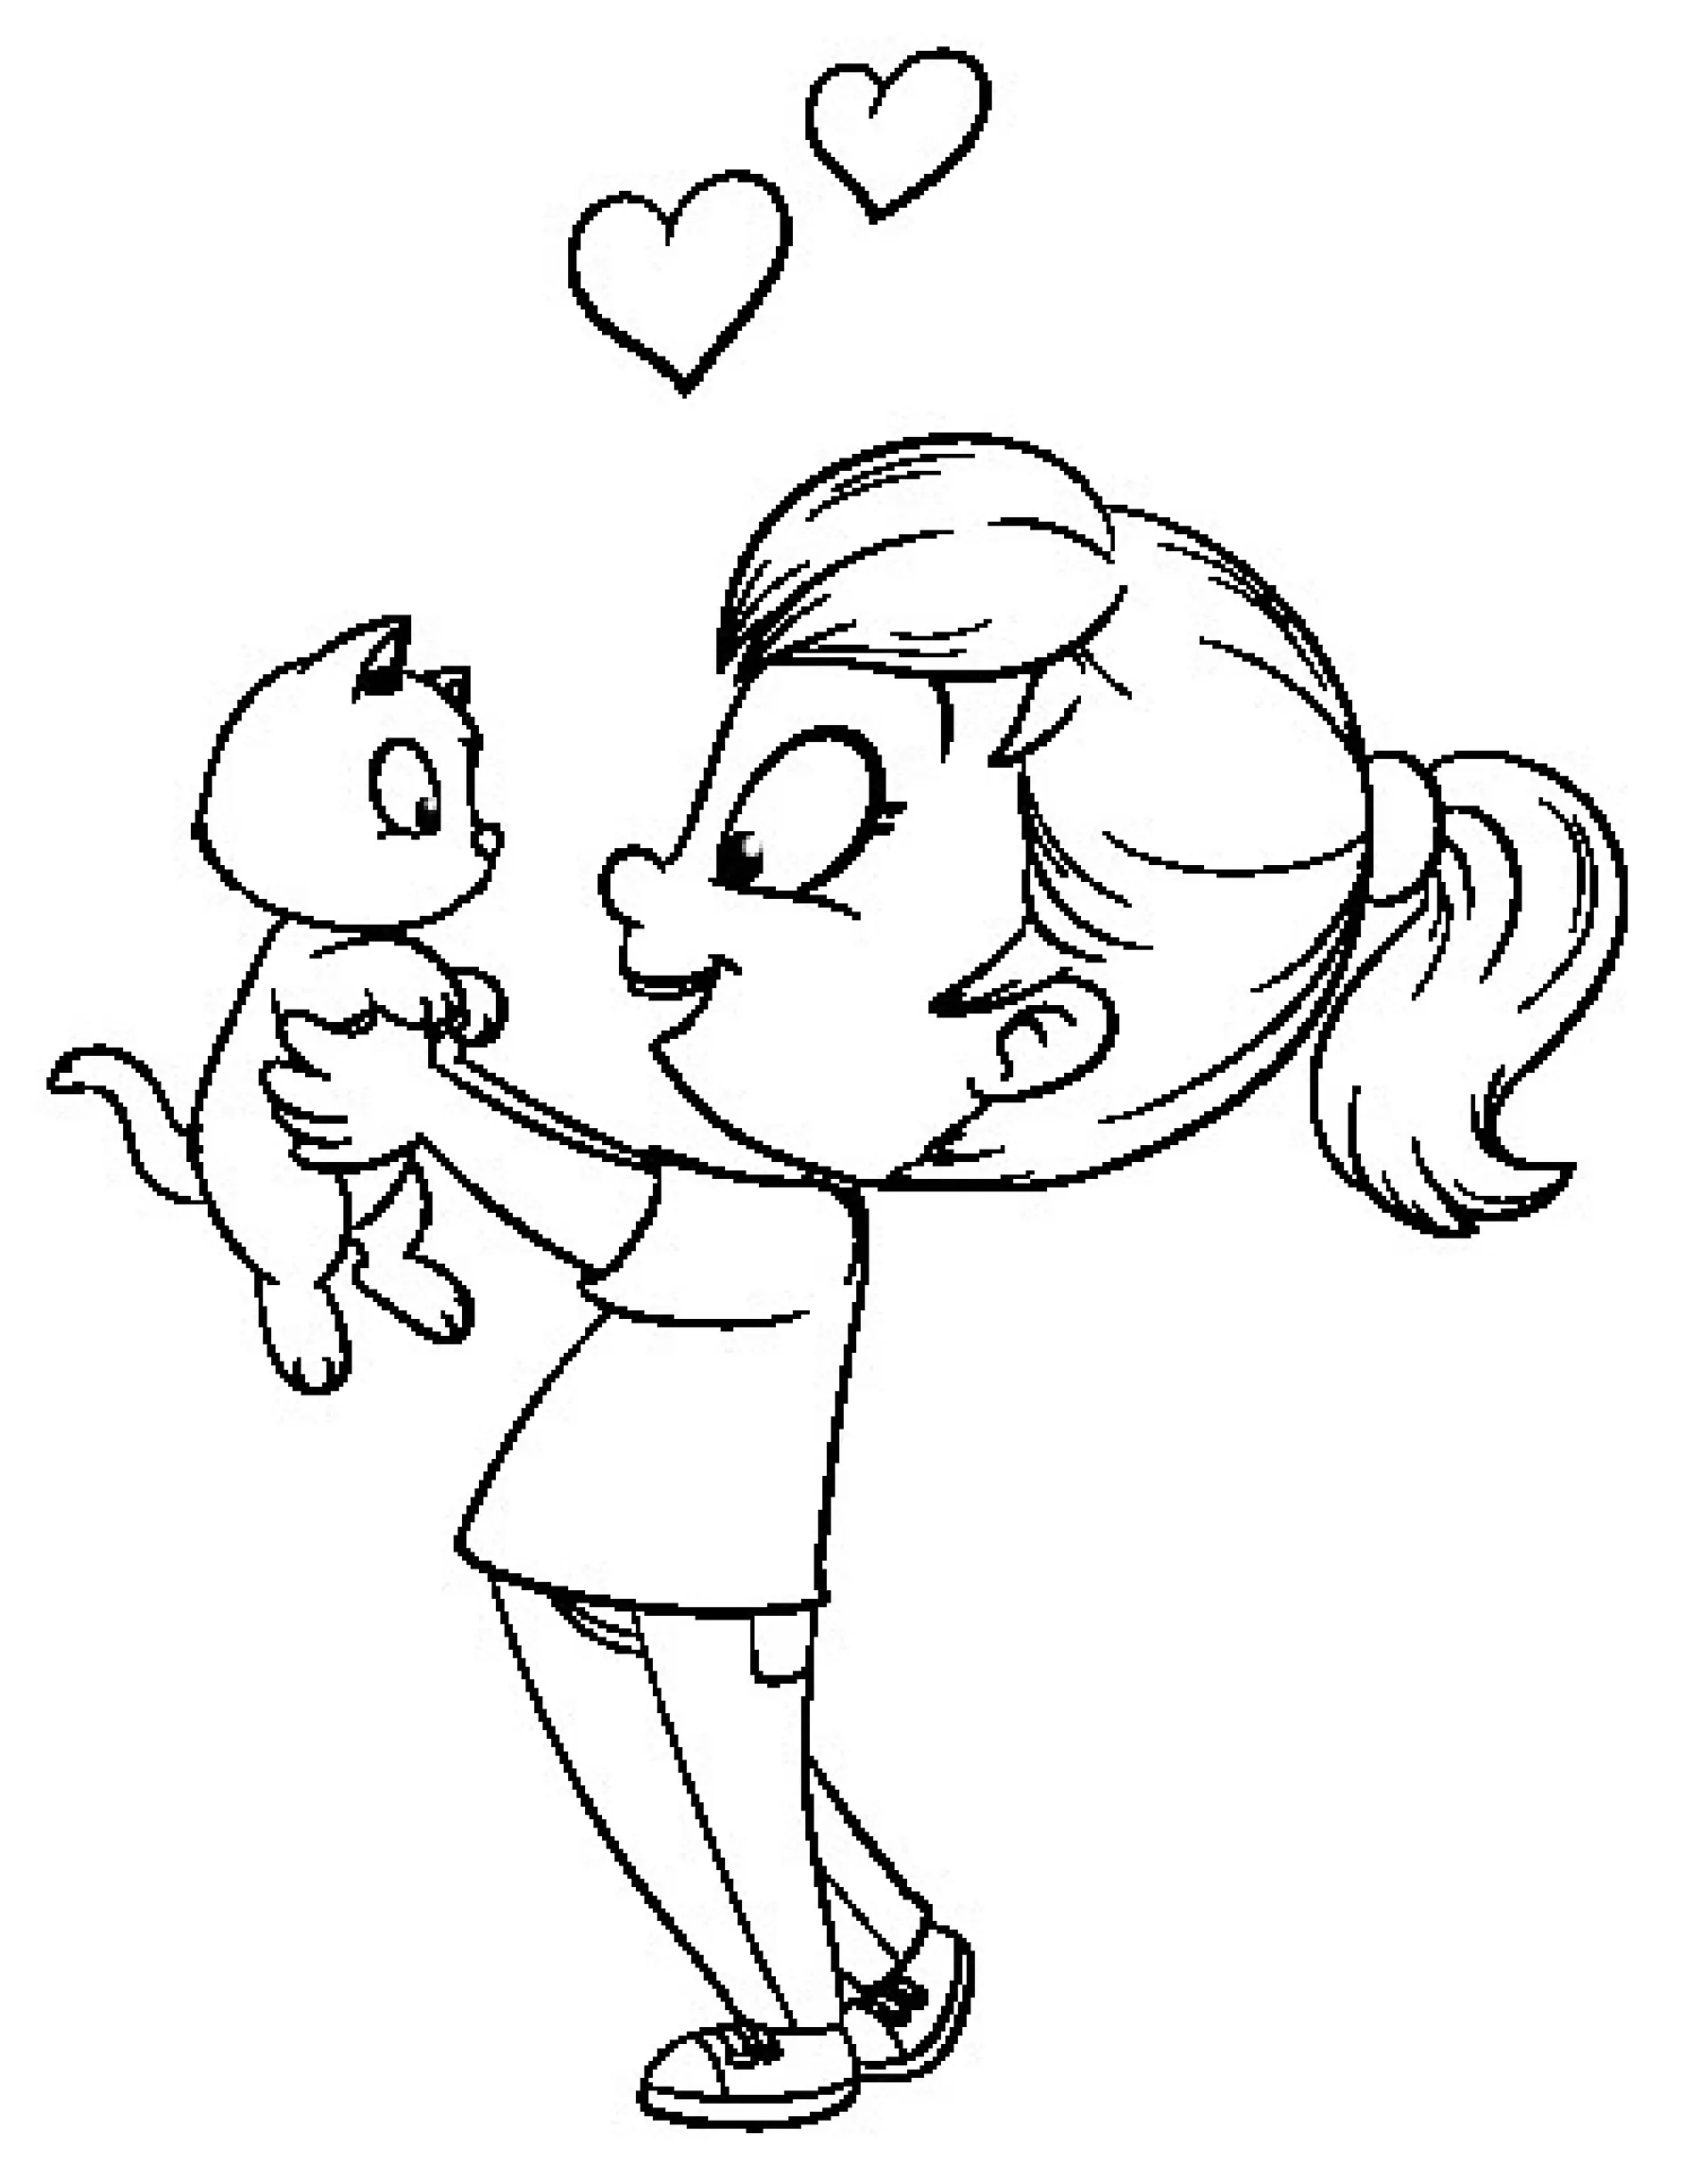 Ausmalbild Mädchen hält Katze liebevollNiedliches Mädchen mit Katze - Vektor-Illustration